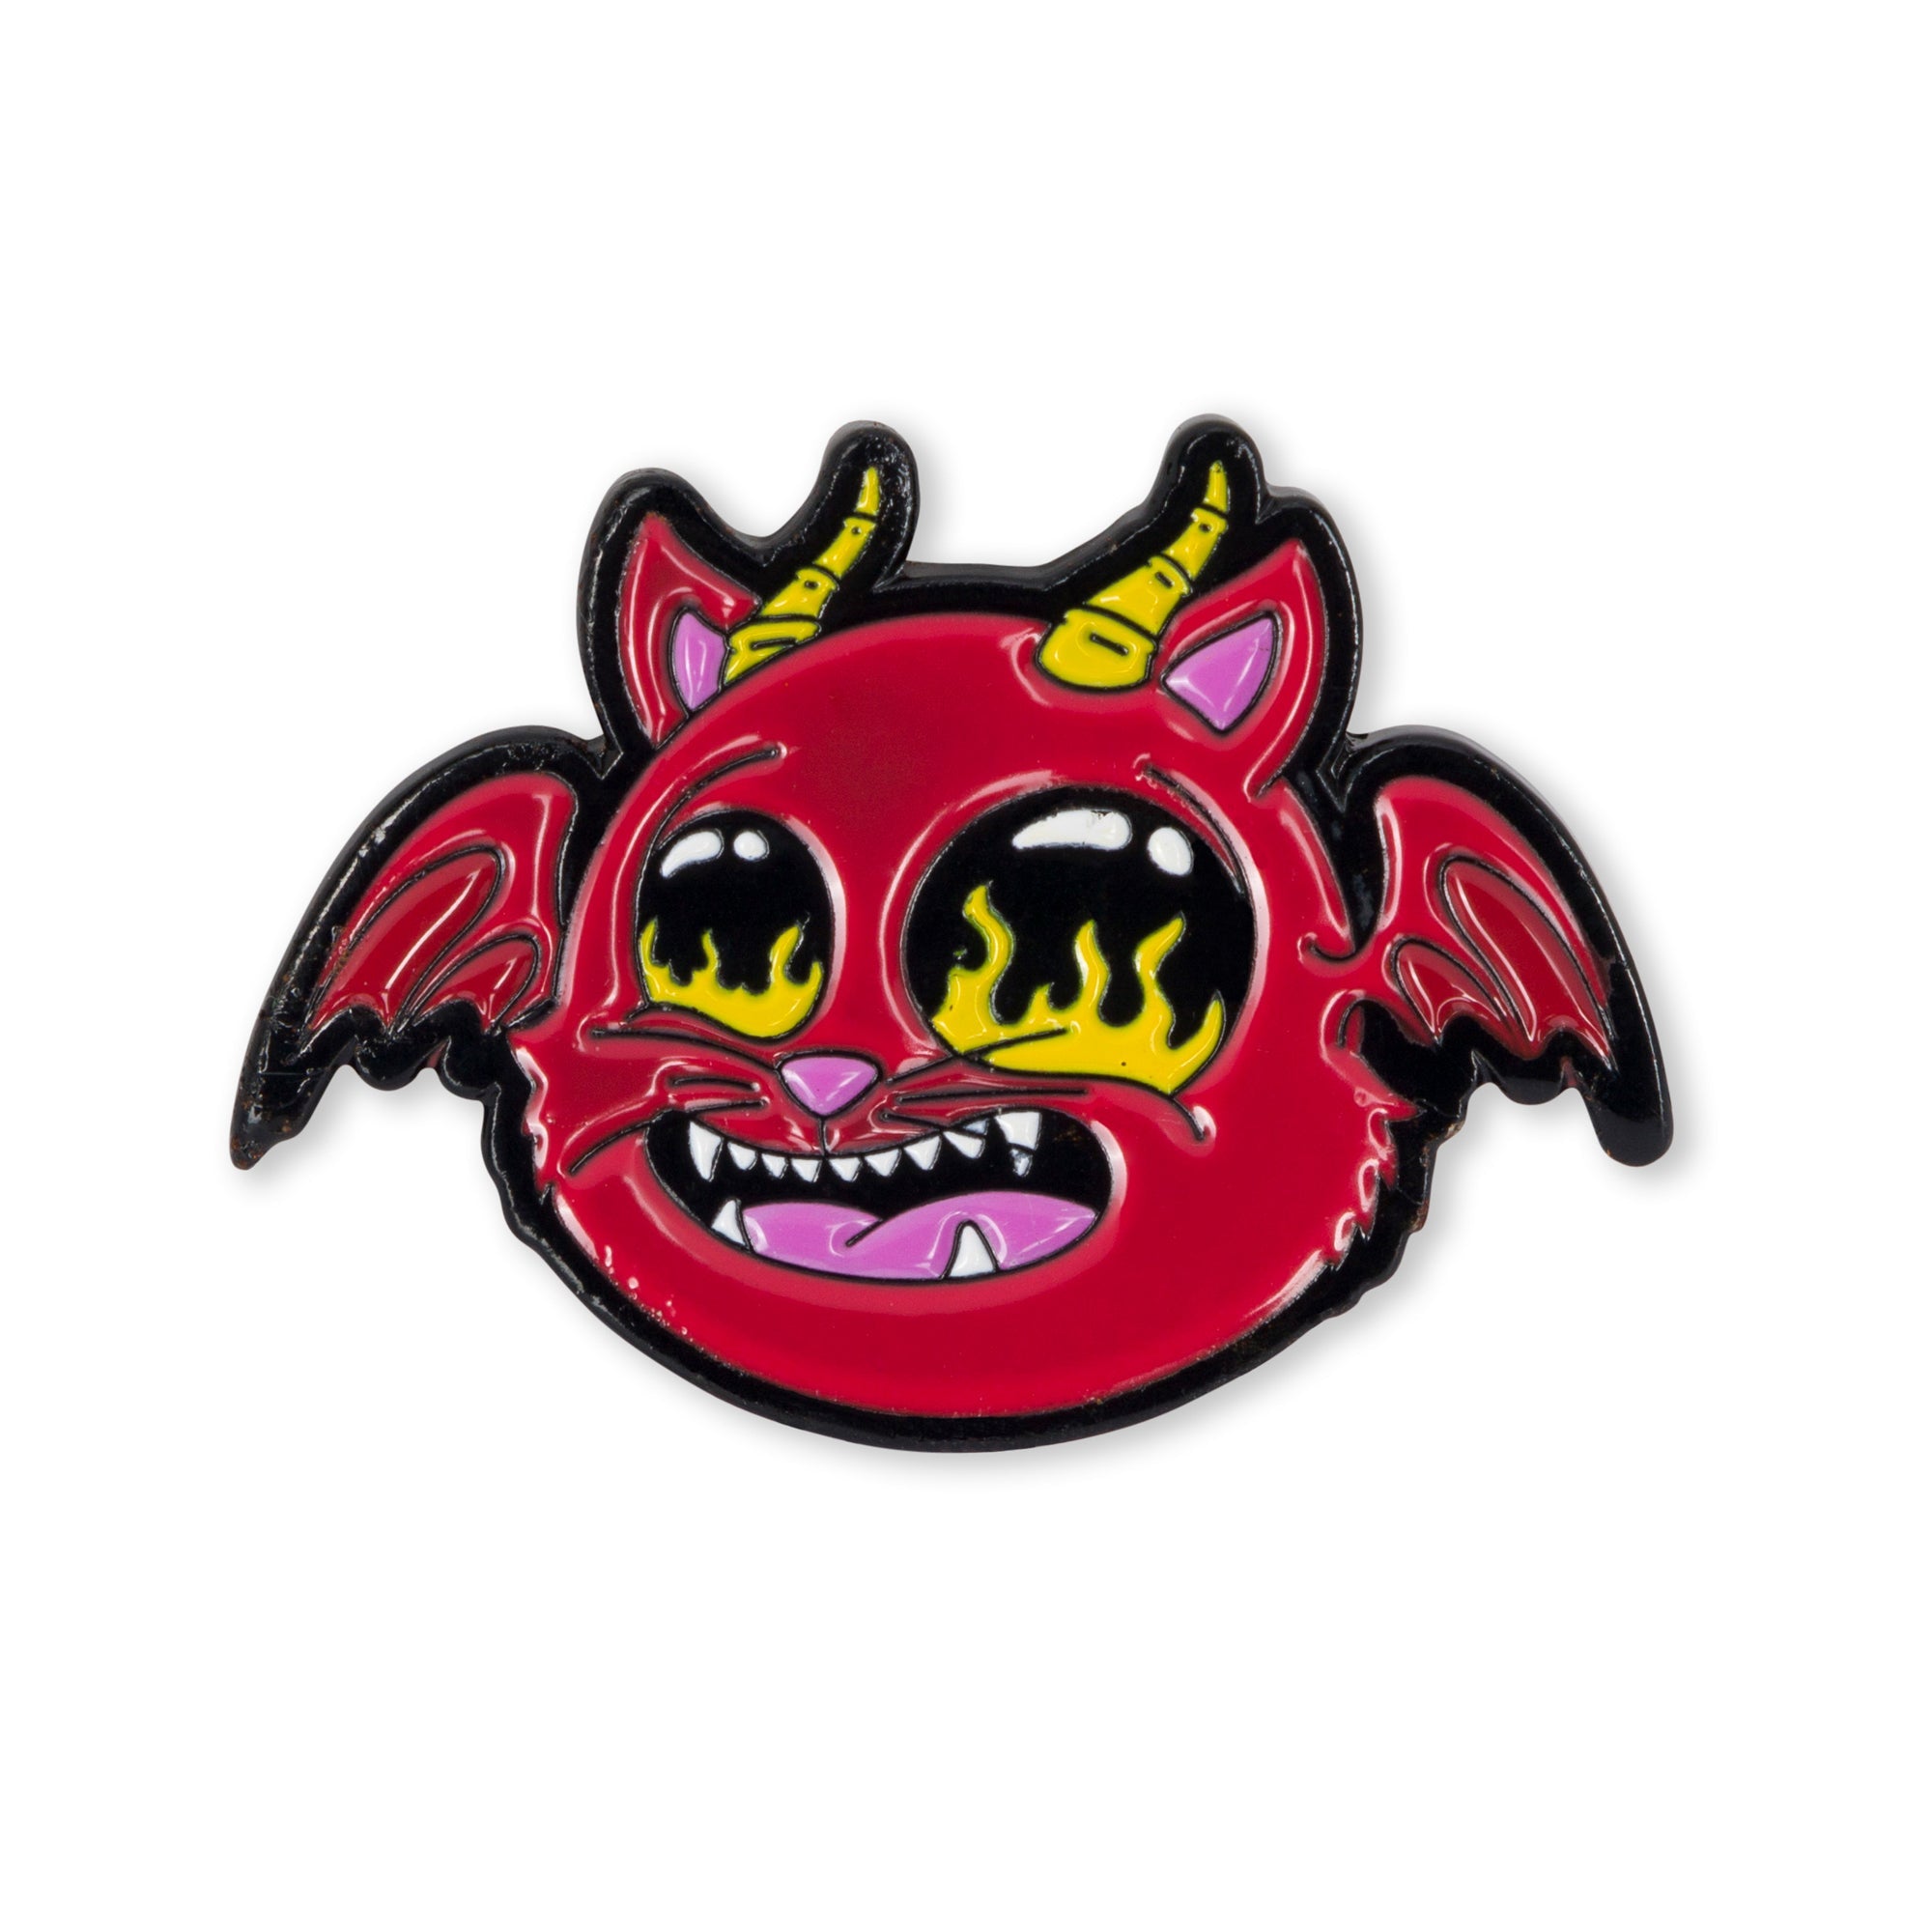 RIPNDIP Devil Monster Pin (Multi)